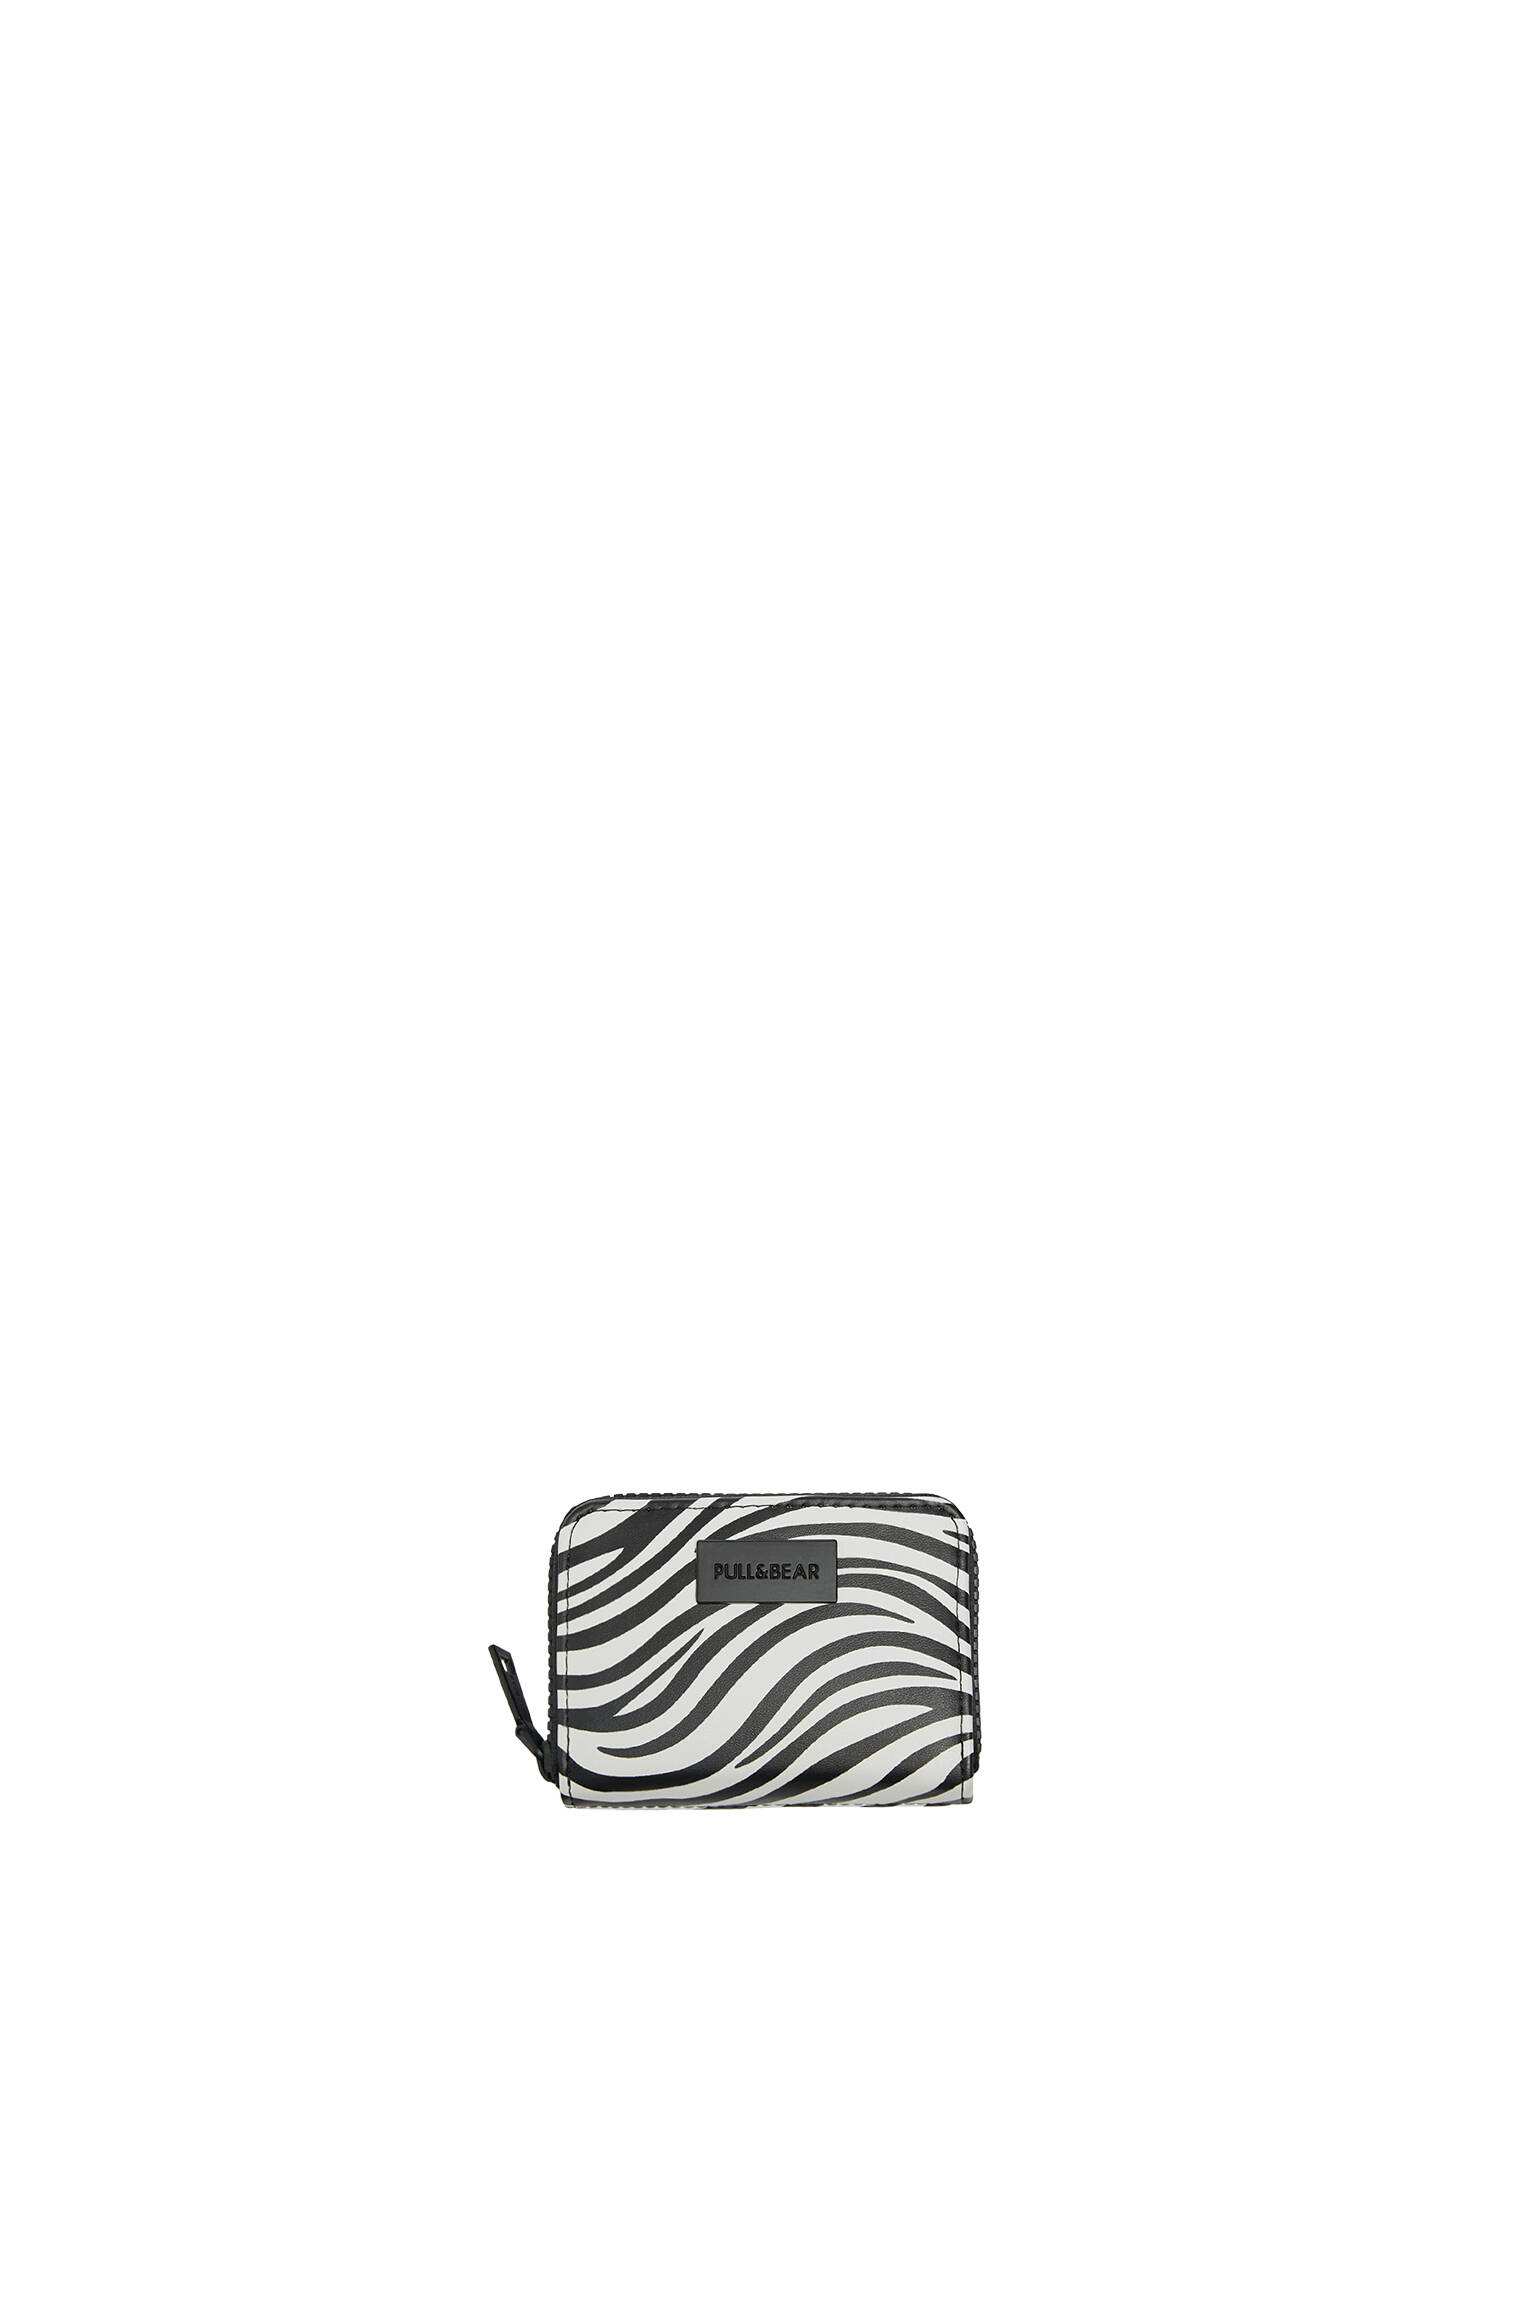 Pull&bear Femme Portefeuille En Tissu à Imprimé Animal Noir Et Blanc, Avec Fermeture Éclair. Hauteur x Largeur x Profondeur : 11 x 8 x 2,5 cm. ZÈbre M